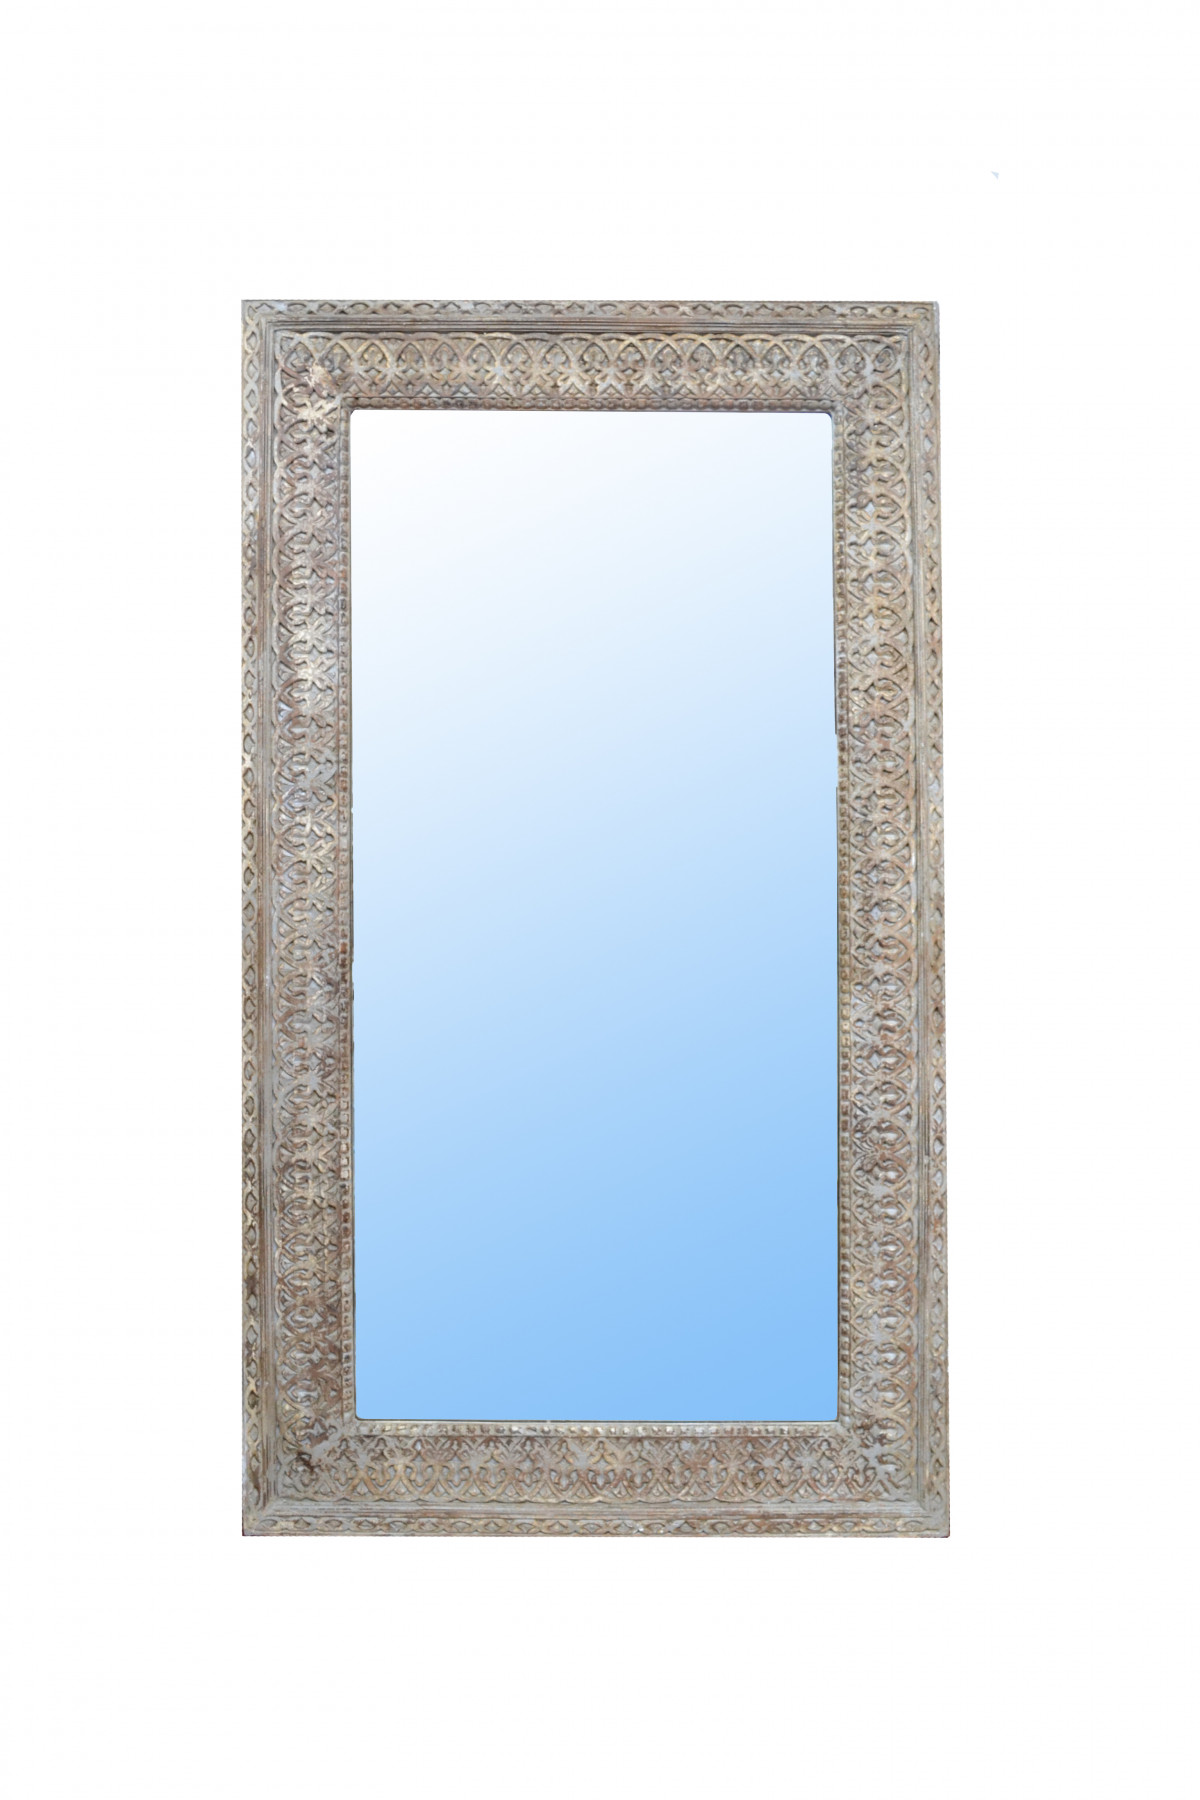 Grand miroir en bois sculpté 1